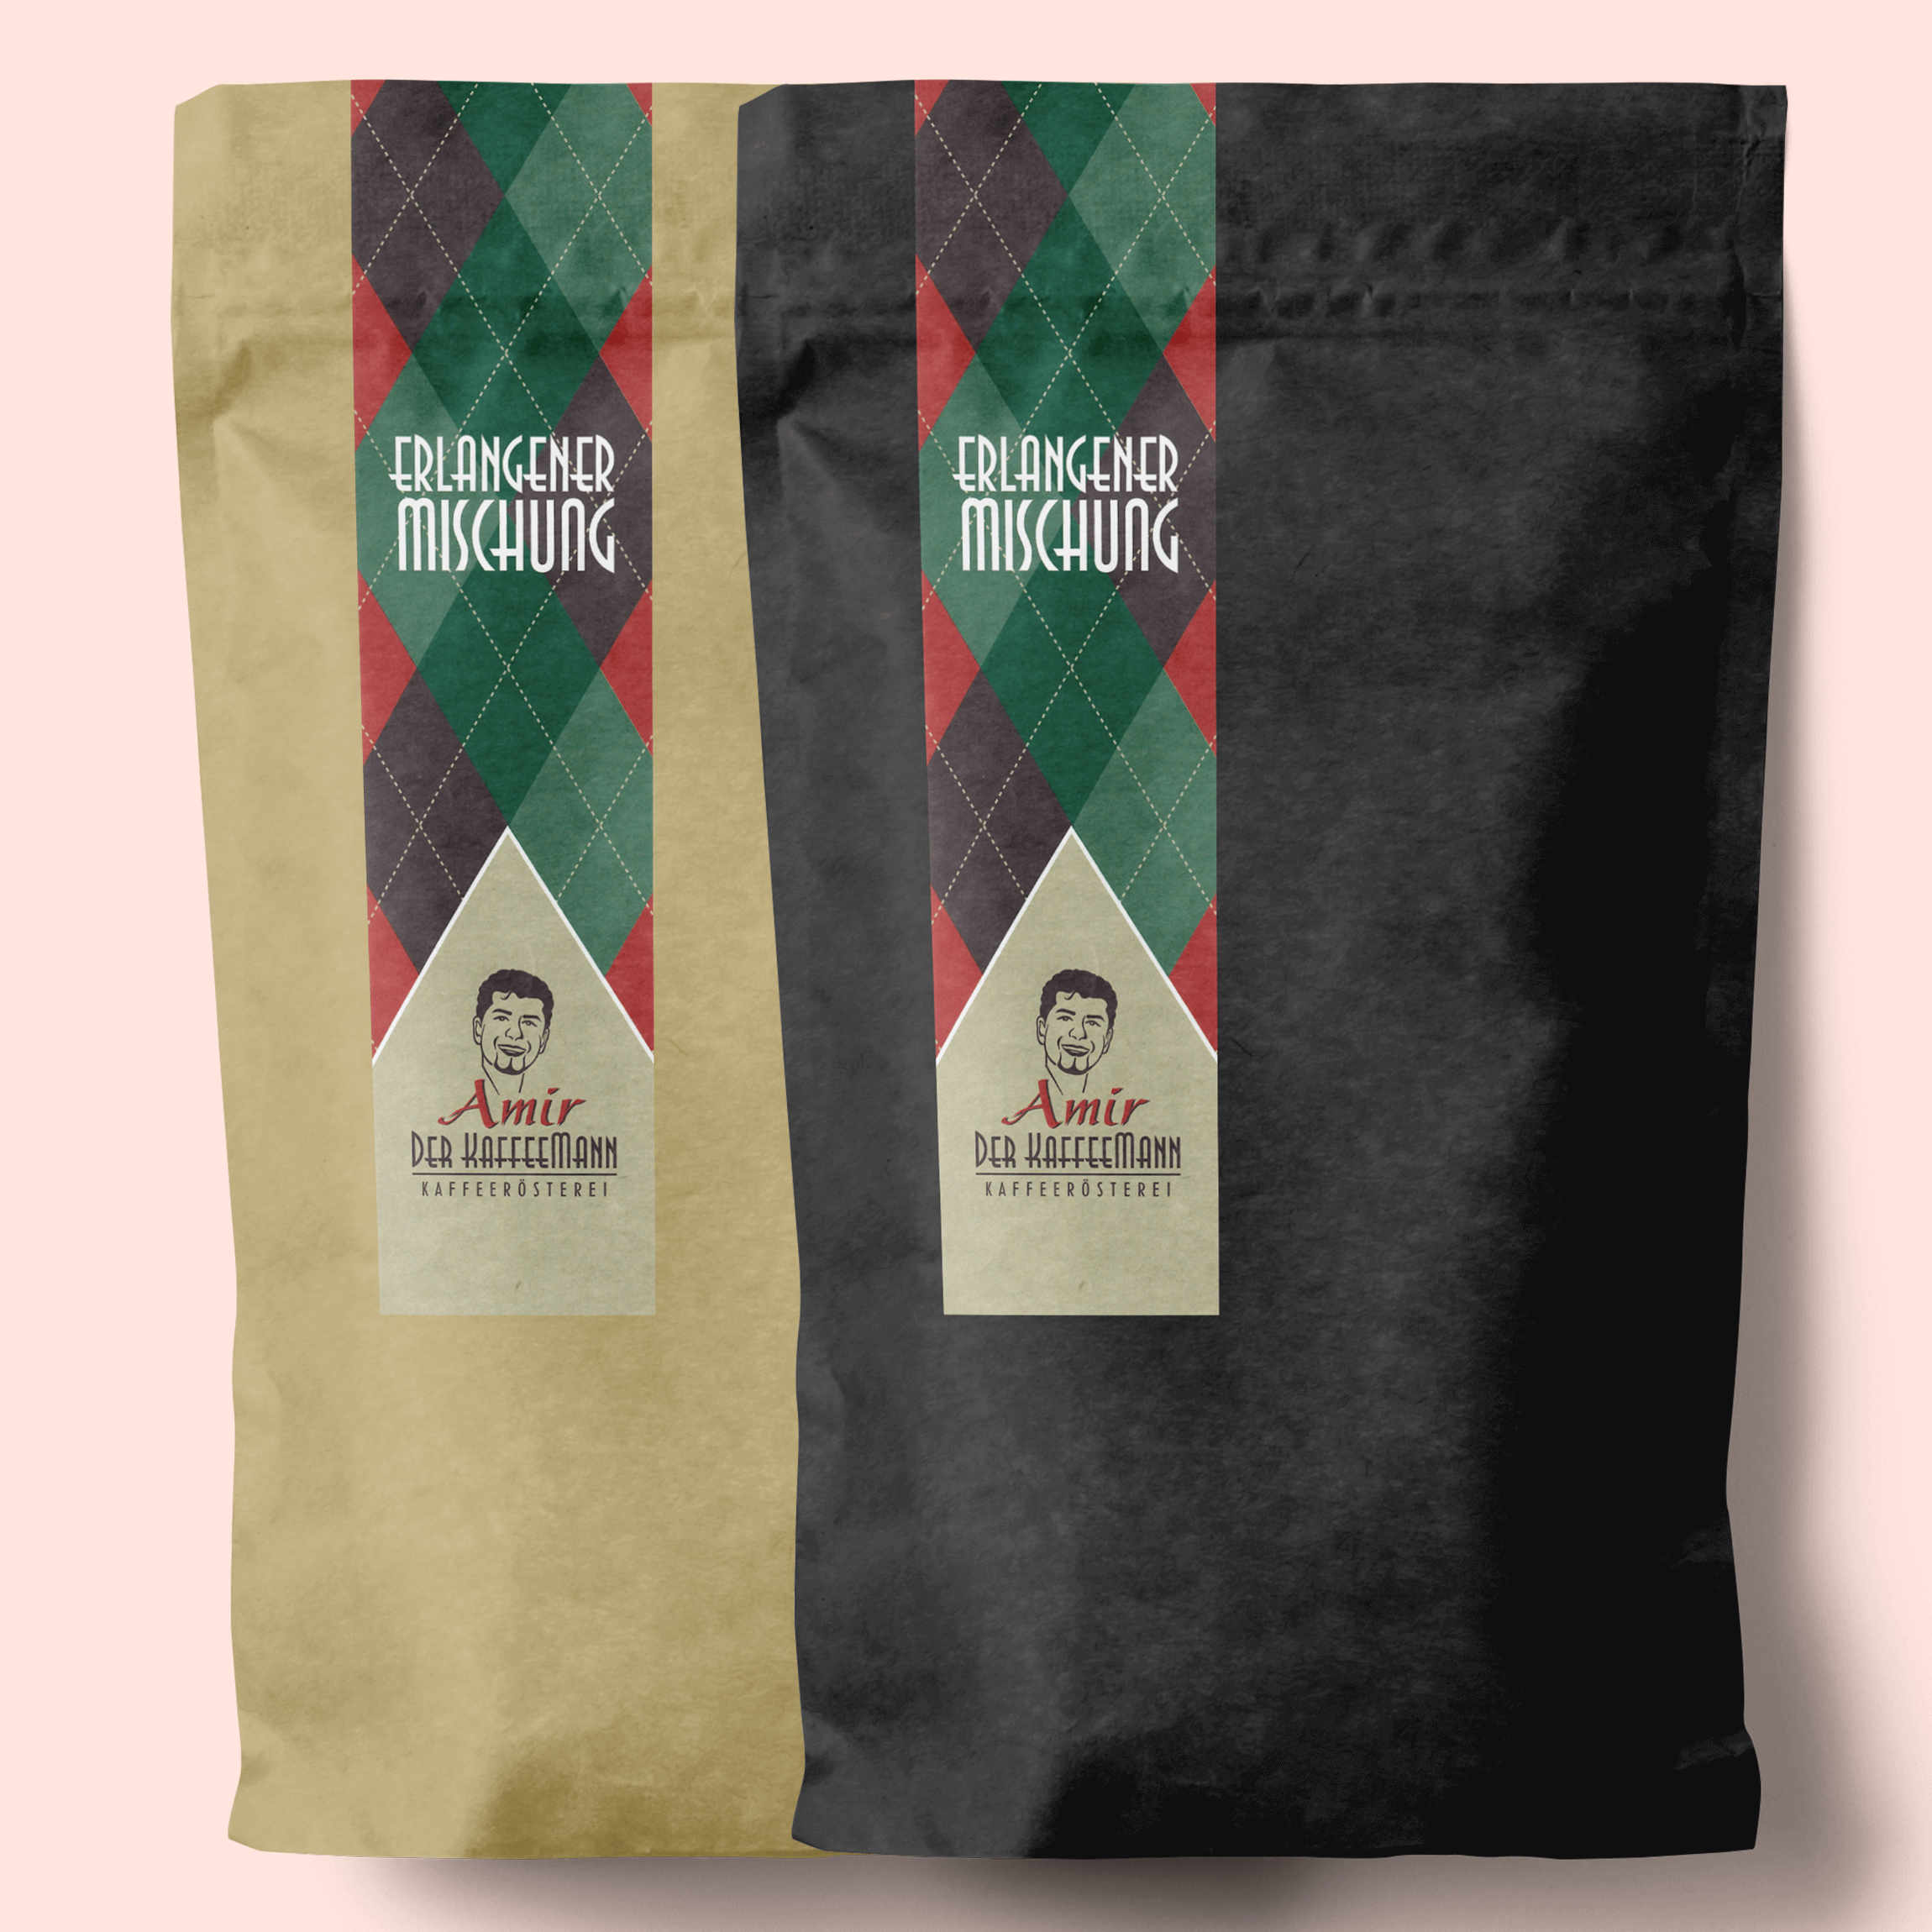 Verpackungen der Erlangener Mischung, links dunkle Röstung für Espresso, rechts helle Röstung für Filterkaffee